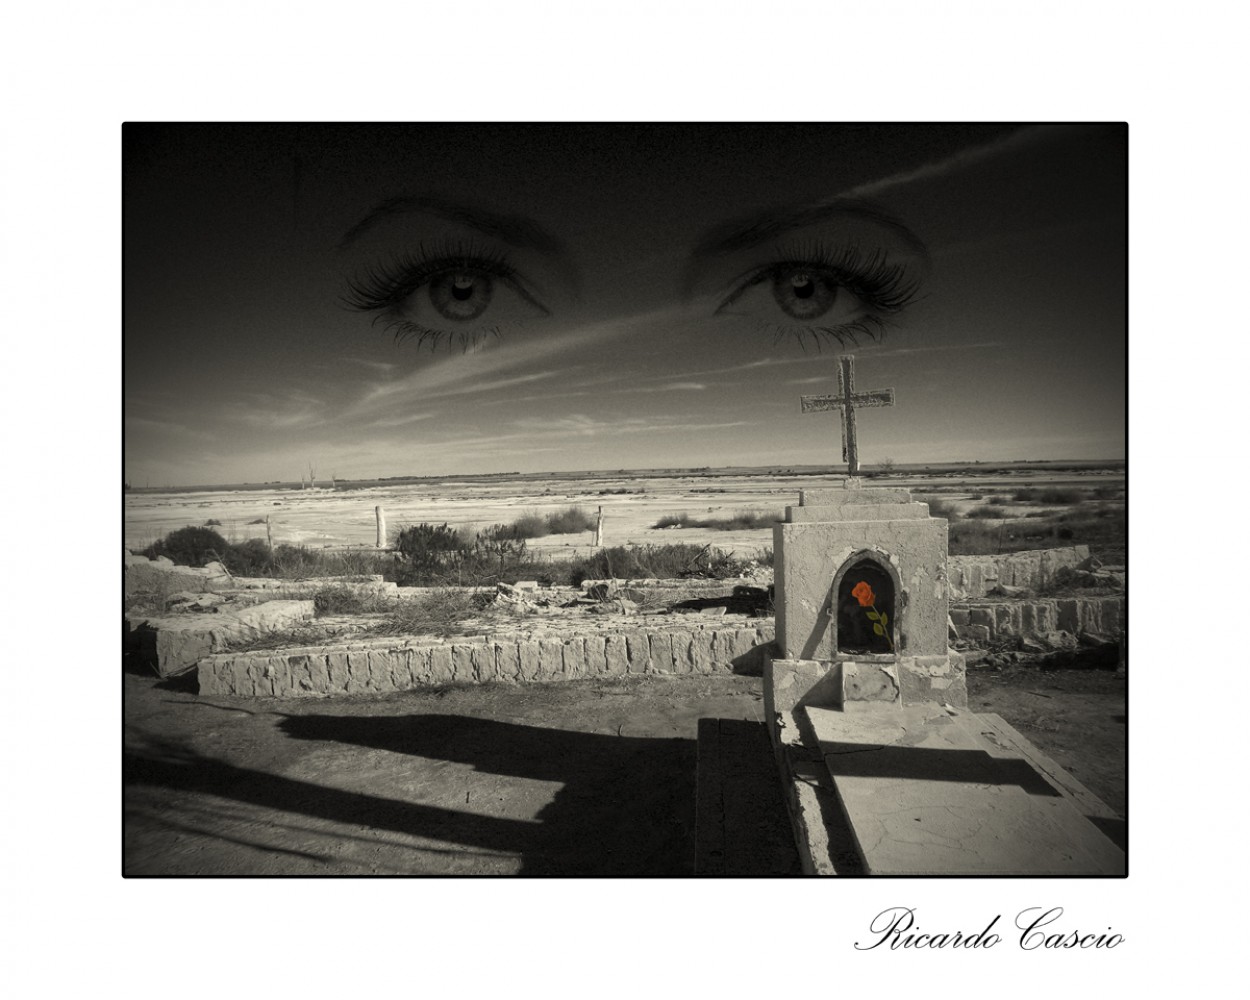 "Vendra la muerte y tendra tus ojos" de Ricardo Cascio